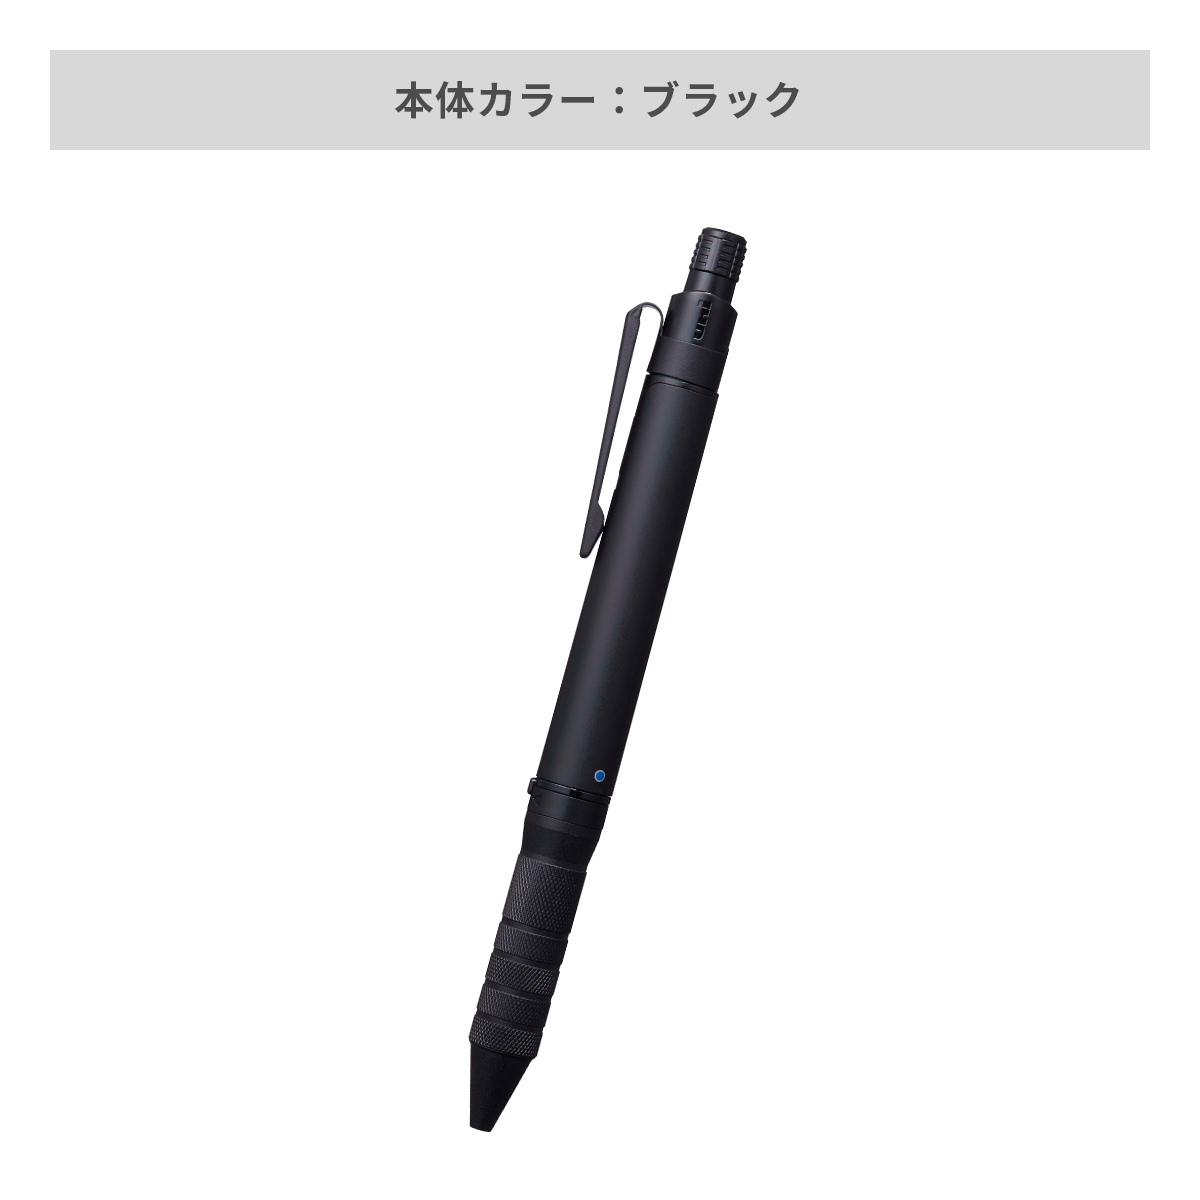 三菱鉛筆 ユニボール アールイー3ビズ 0.5mm【名入れボールペン / パッド印刷】 画像4